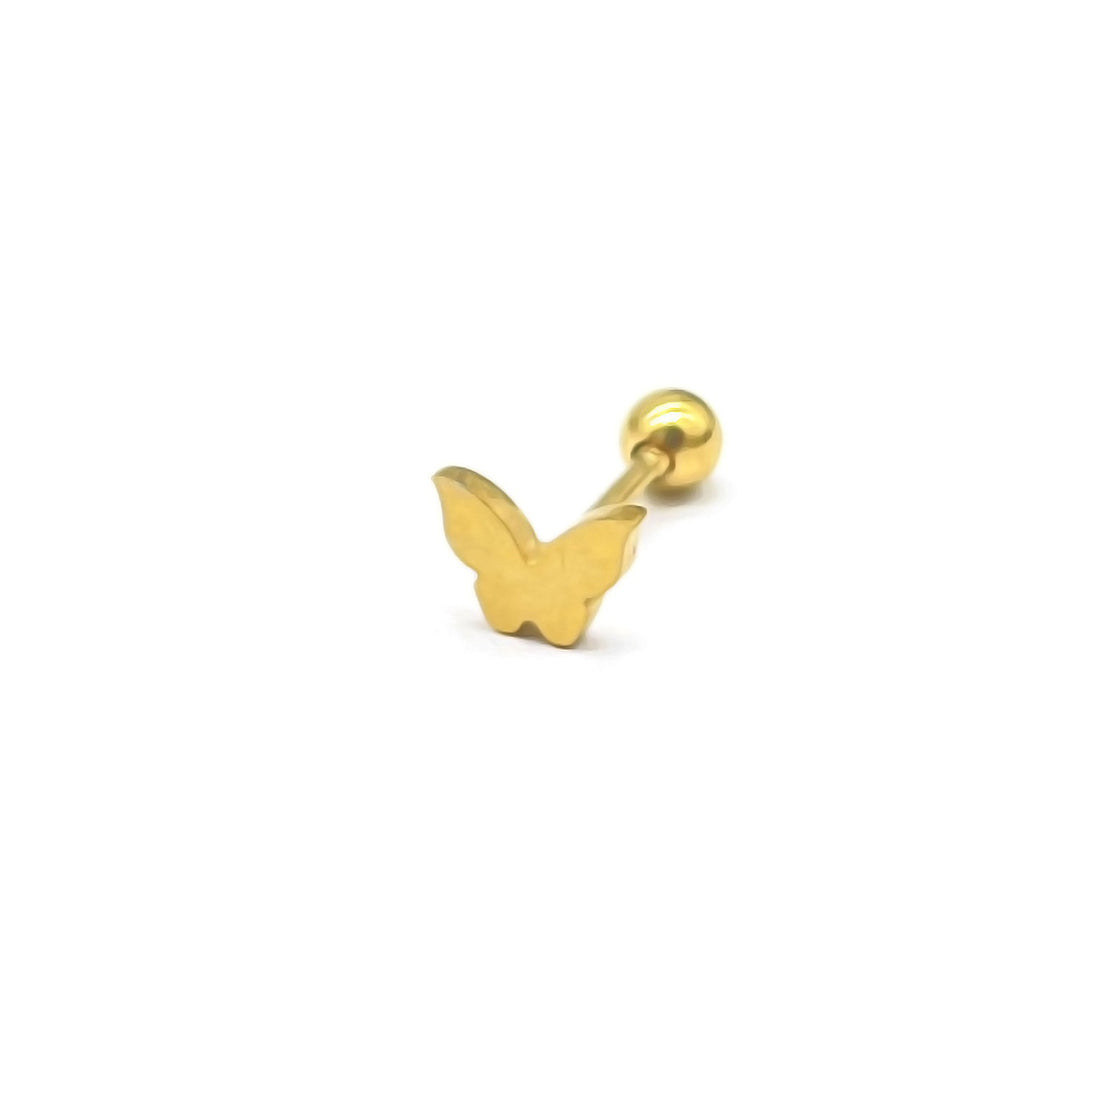 Vlinder piercing goud. Gouden piercing met vlinder er op. De piercing is van roestvrij staal en waterproof. Afmetingen: 3mm